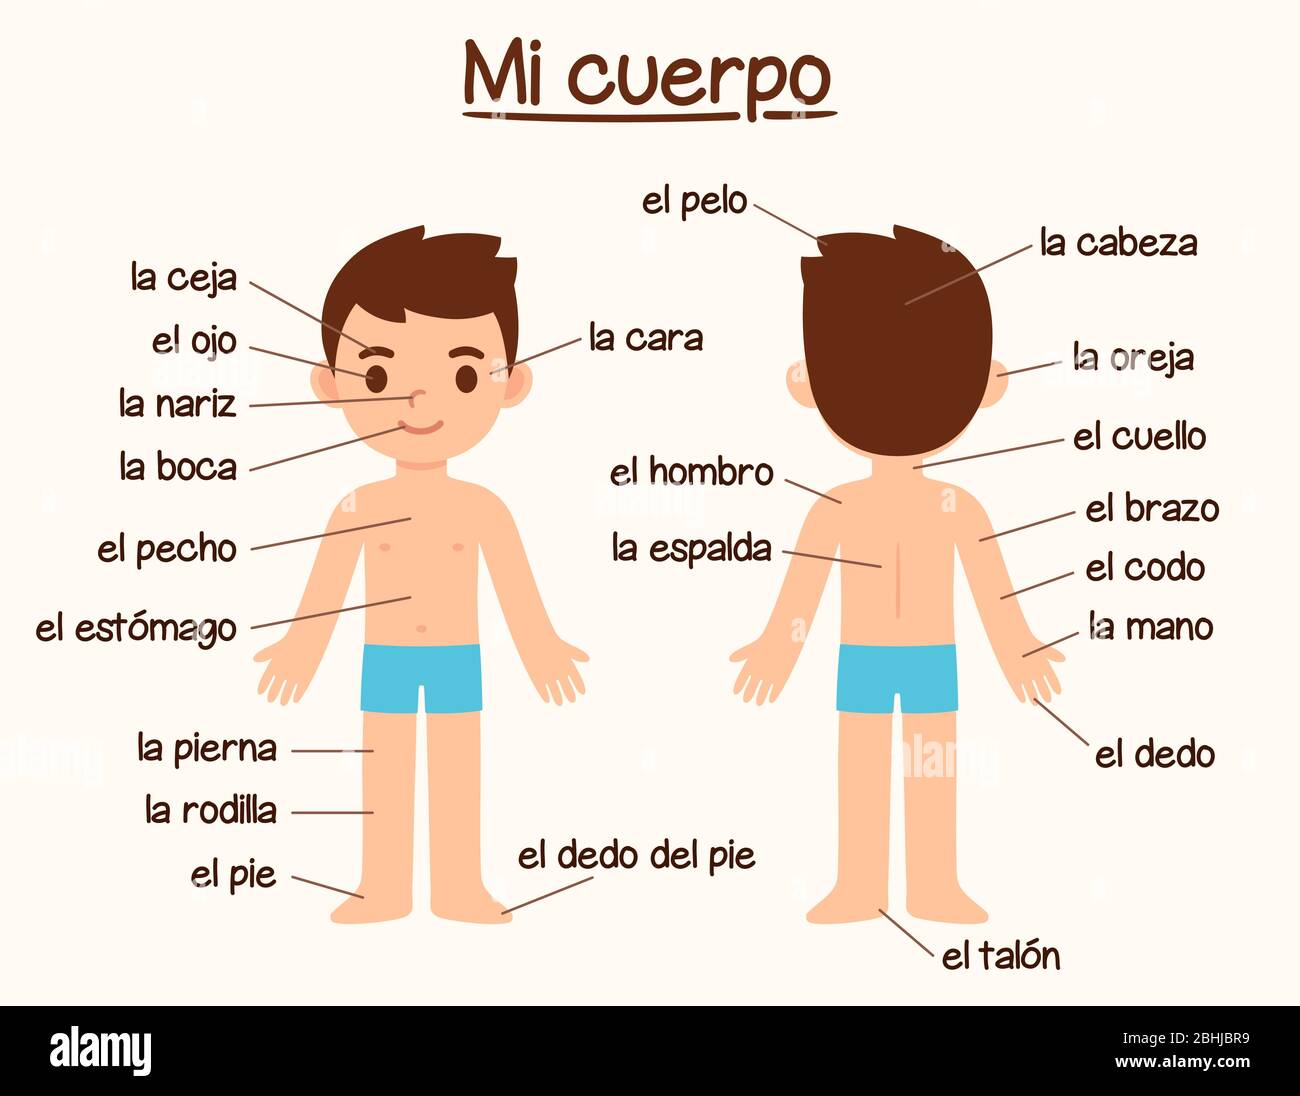 Mi Cuerpo (il mio corpo), diagramma delle parti del corpo umano in spagnolo  per l'apprendimento delle lingue. Carino ragazzo cartoon con etichette,  grafico infografico per bambini Immagine e Vettoriale - Alamy